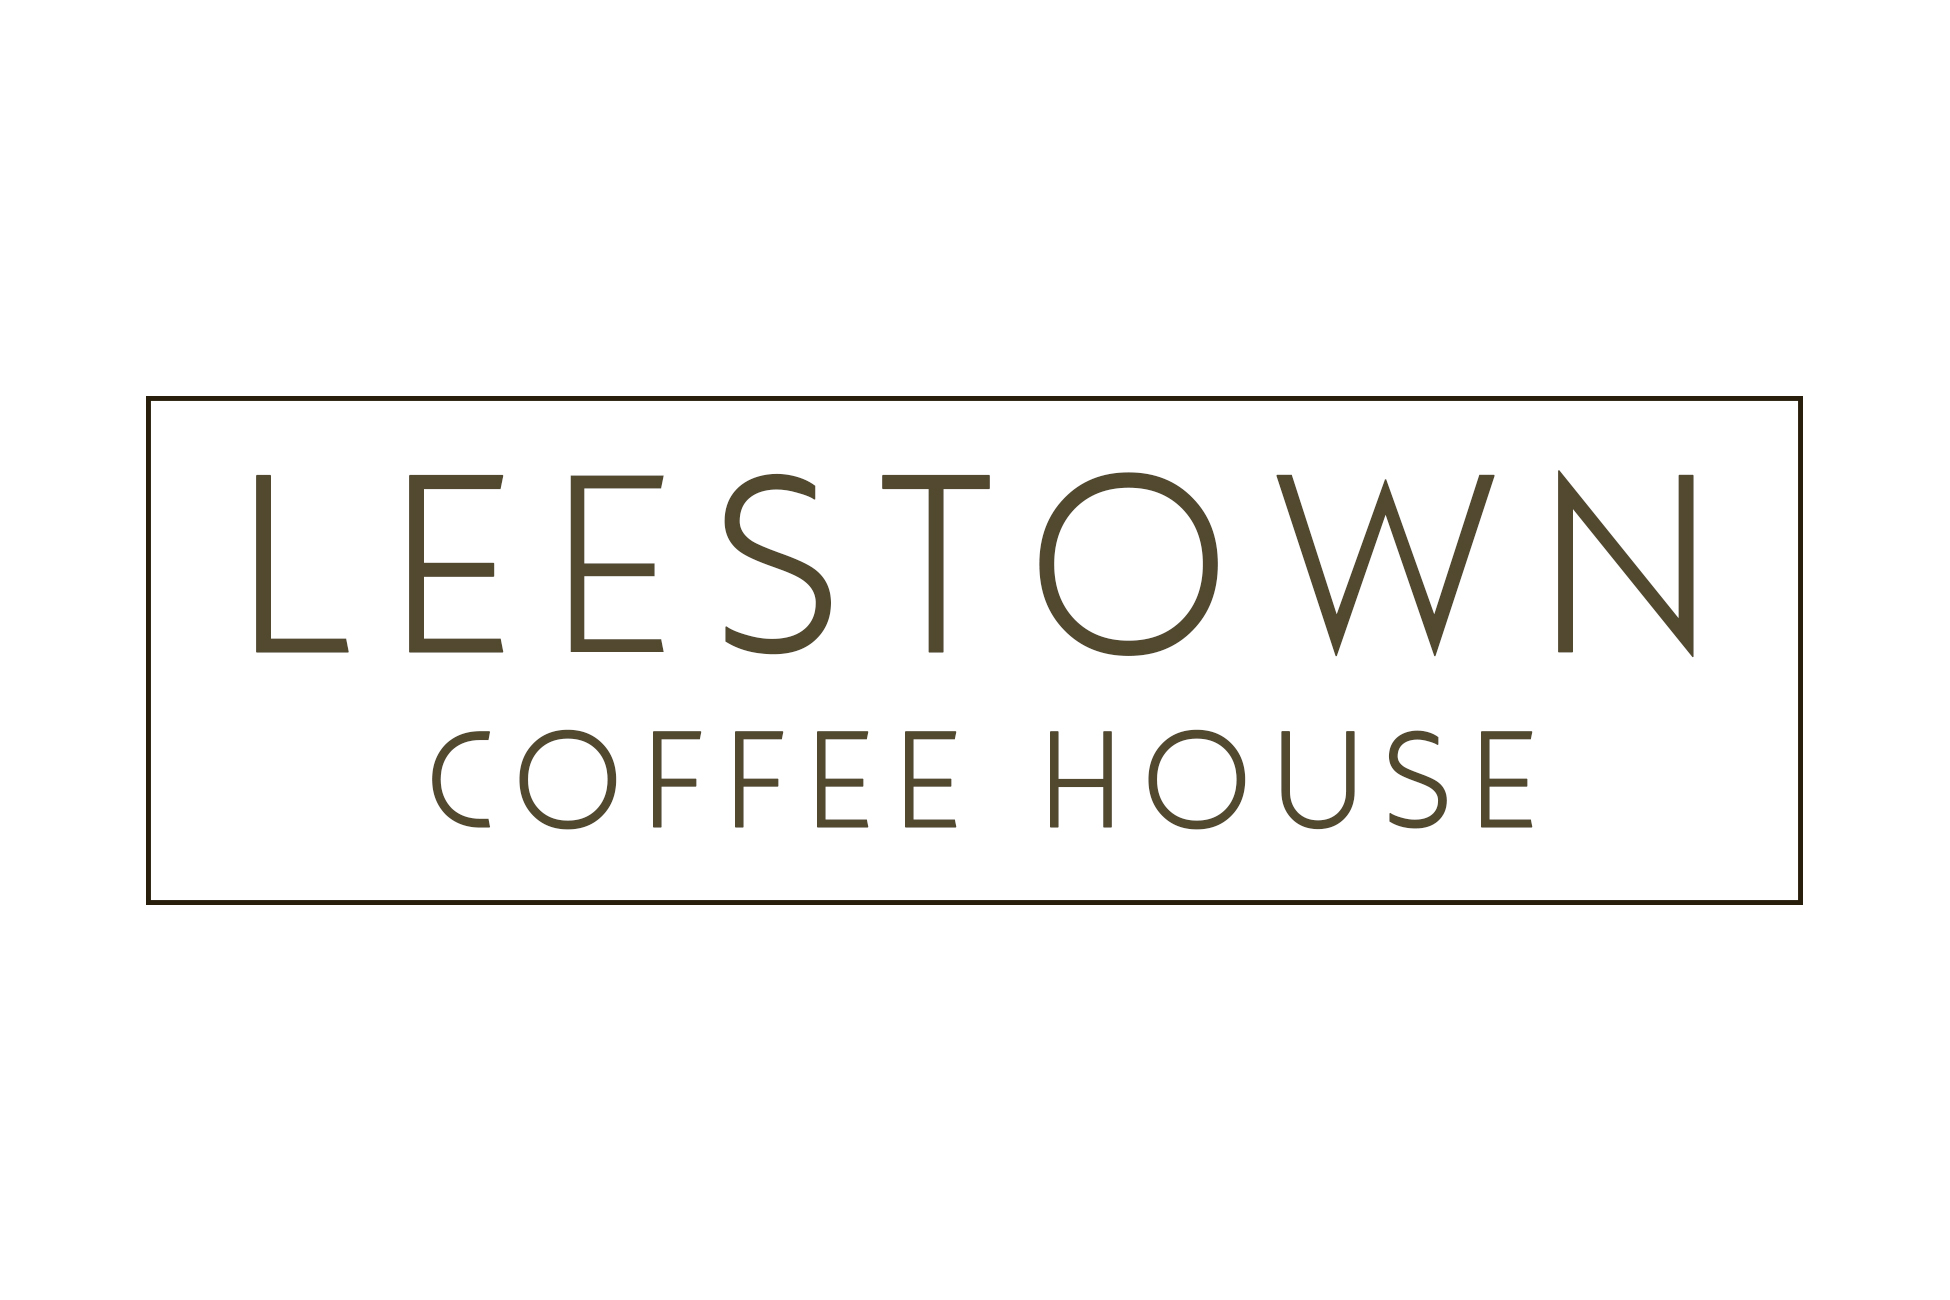 Leestown Coffee House